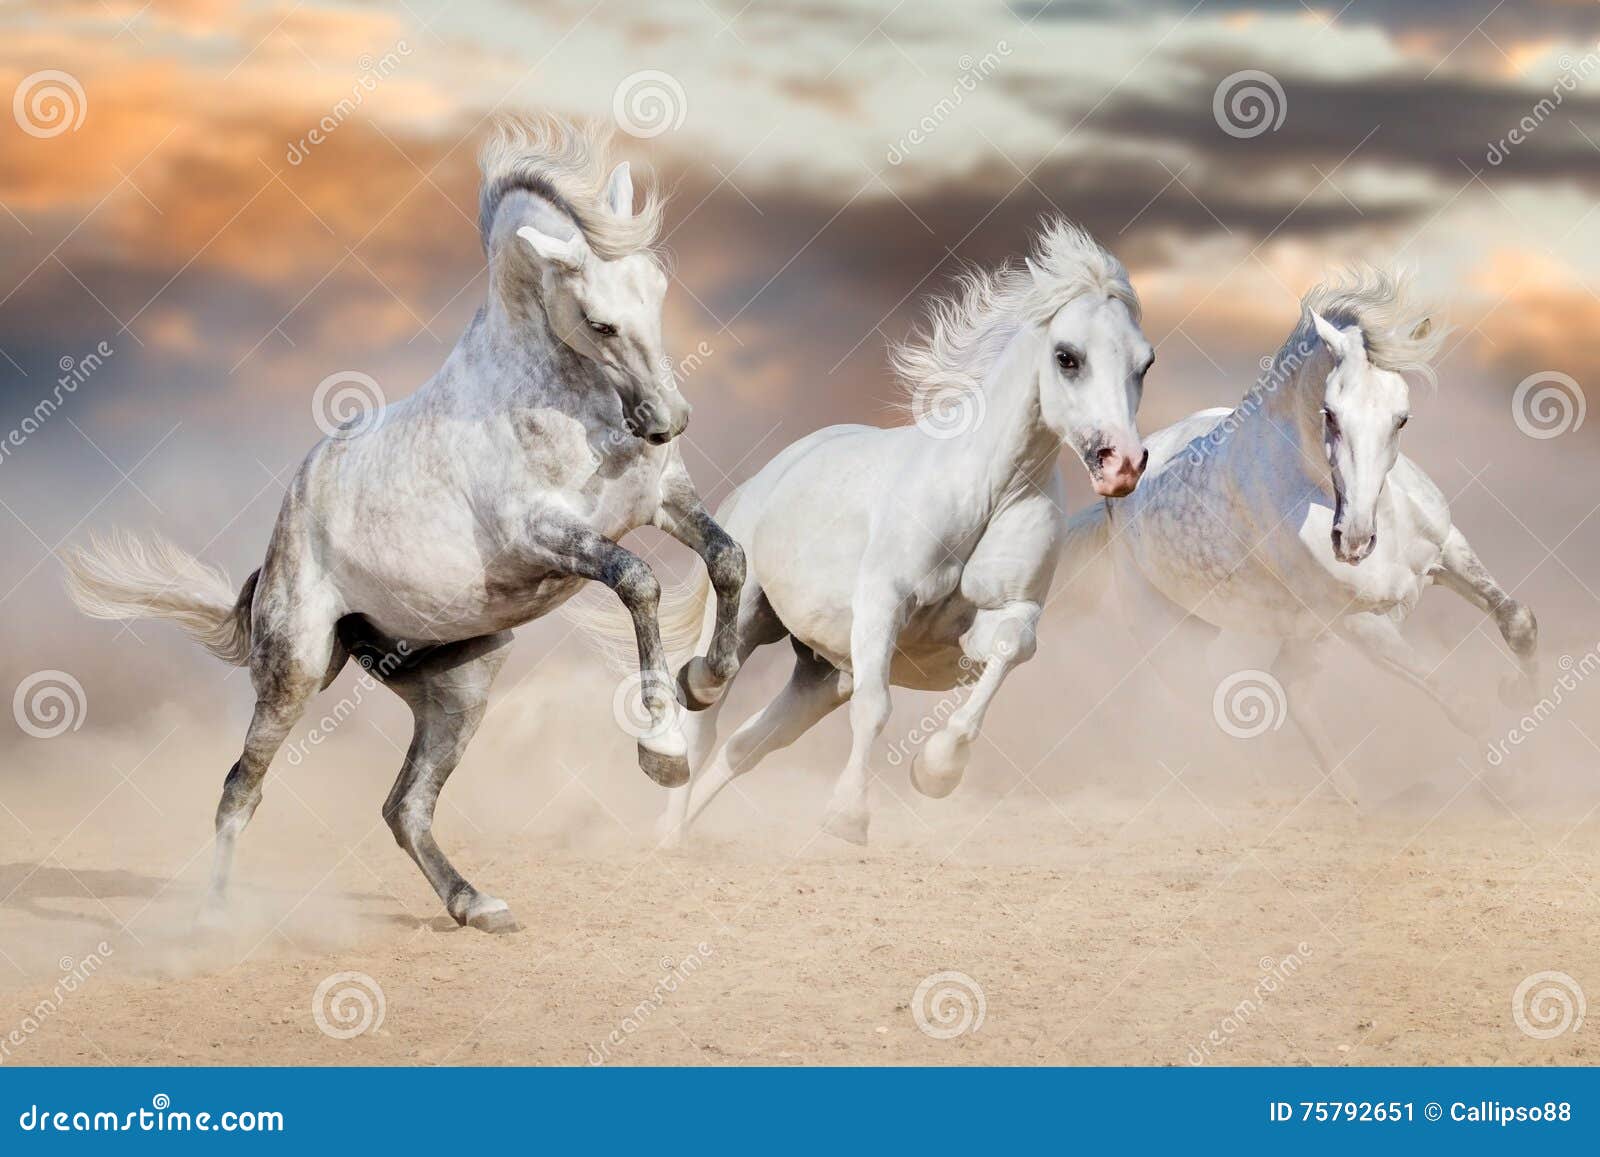 2.900+ Corrida De Obstáculos Corrida De Cavalos Fotos fotos de